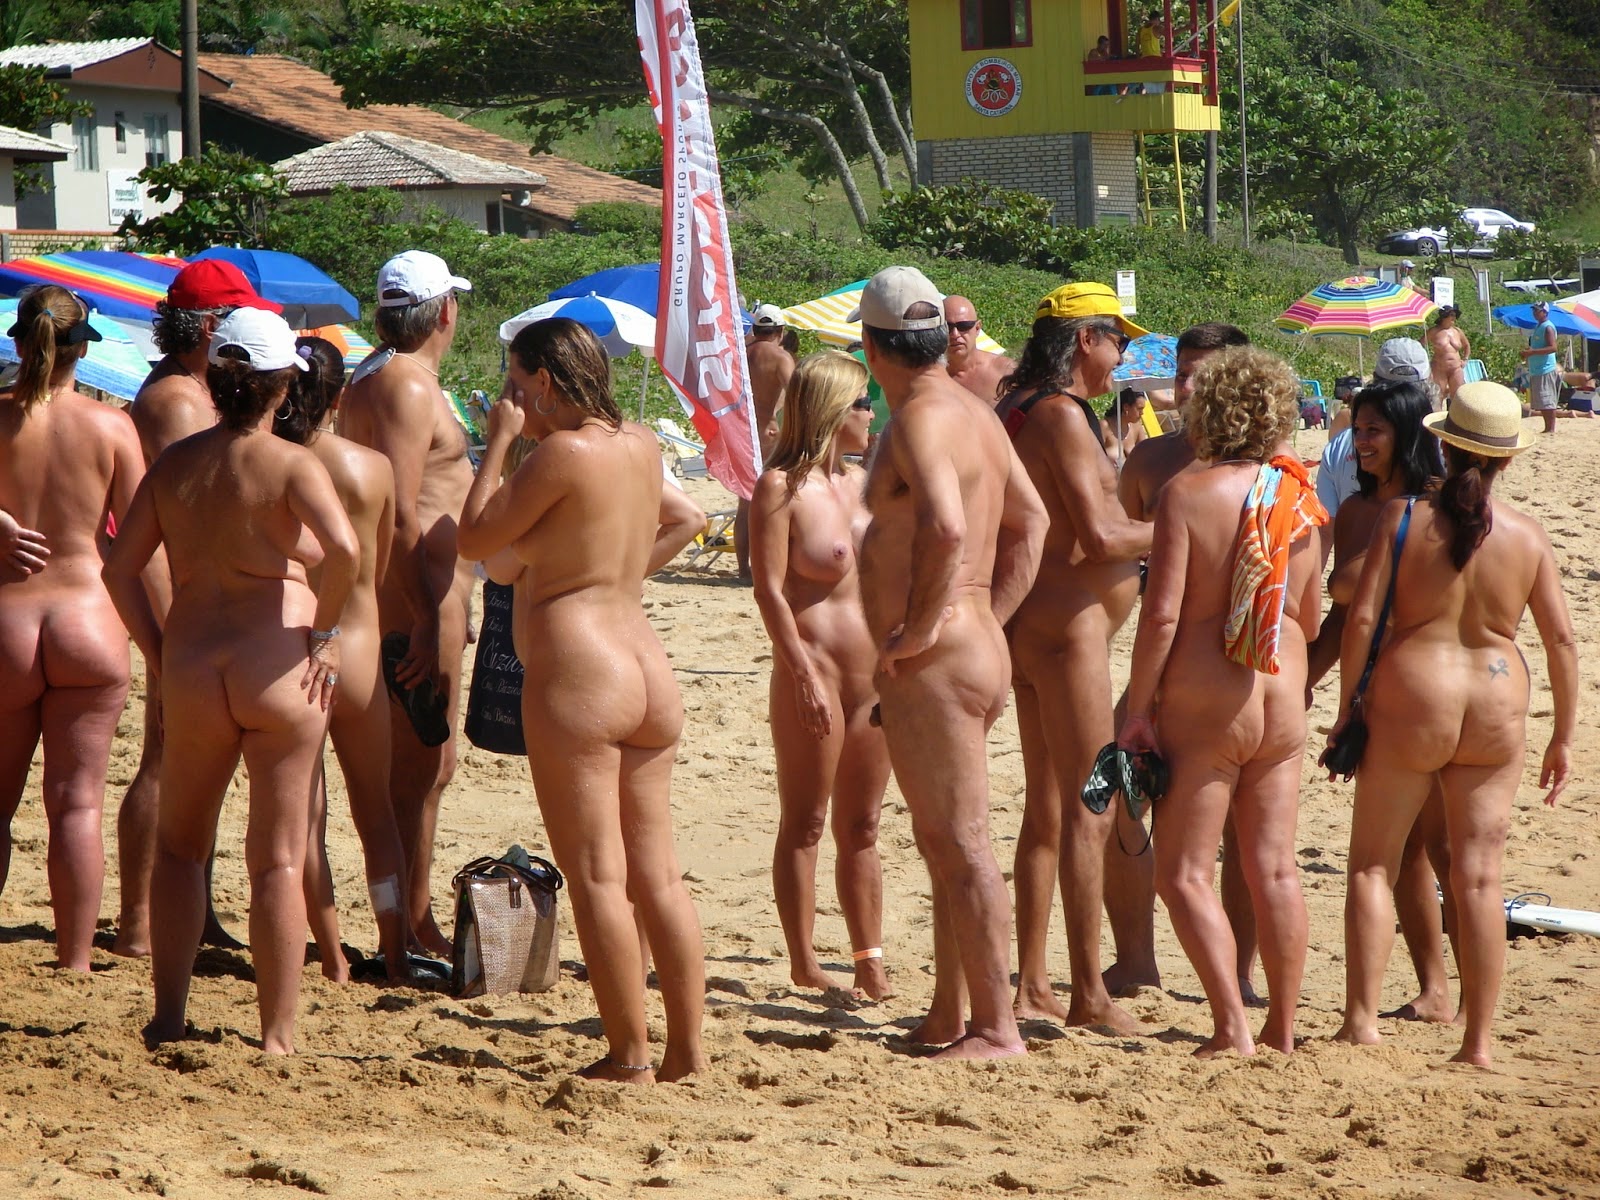 praias de nudismo conheça as praias de nudismo do brasil